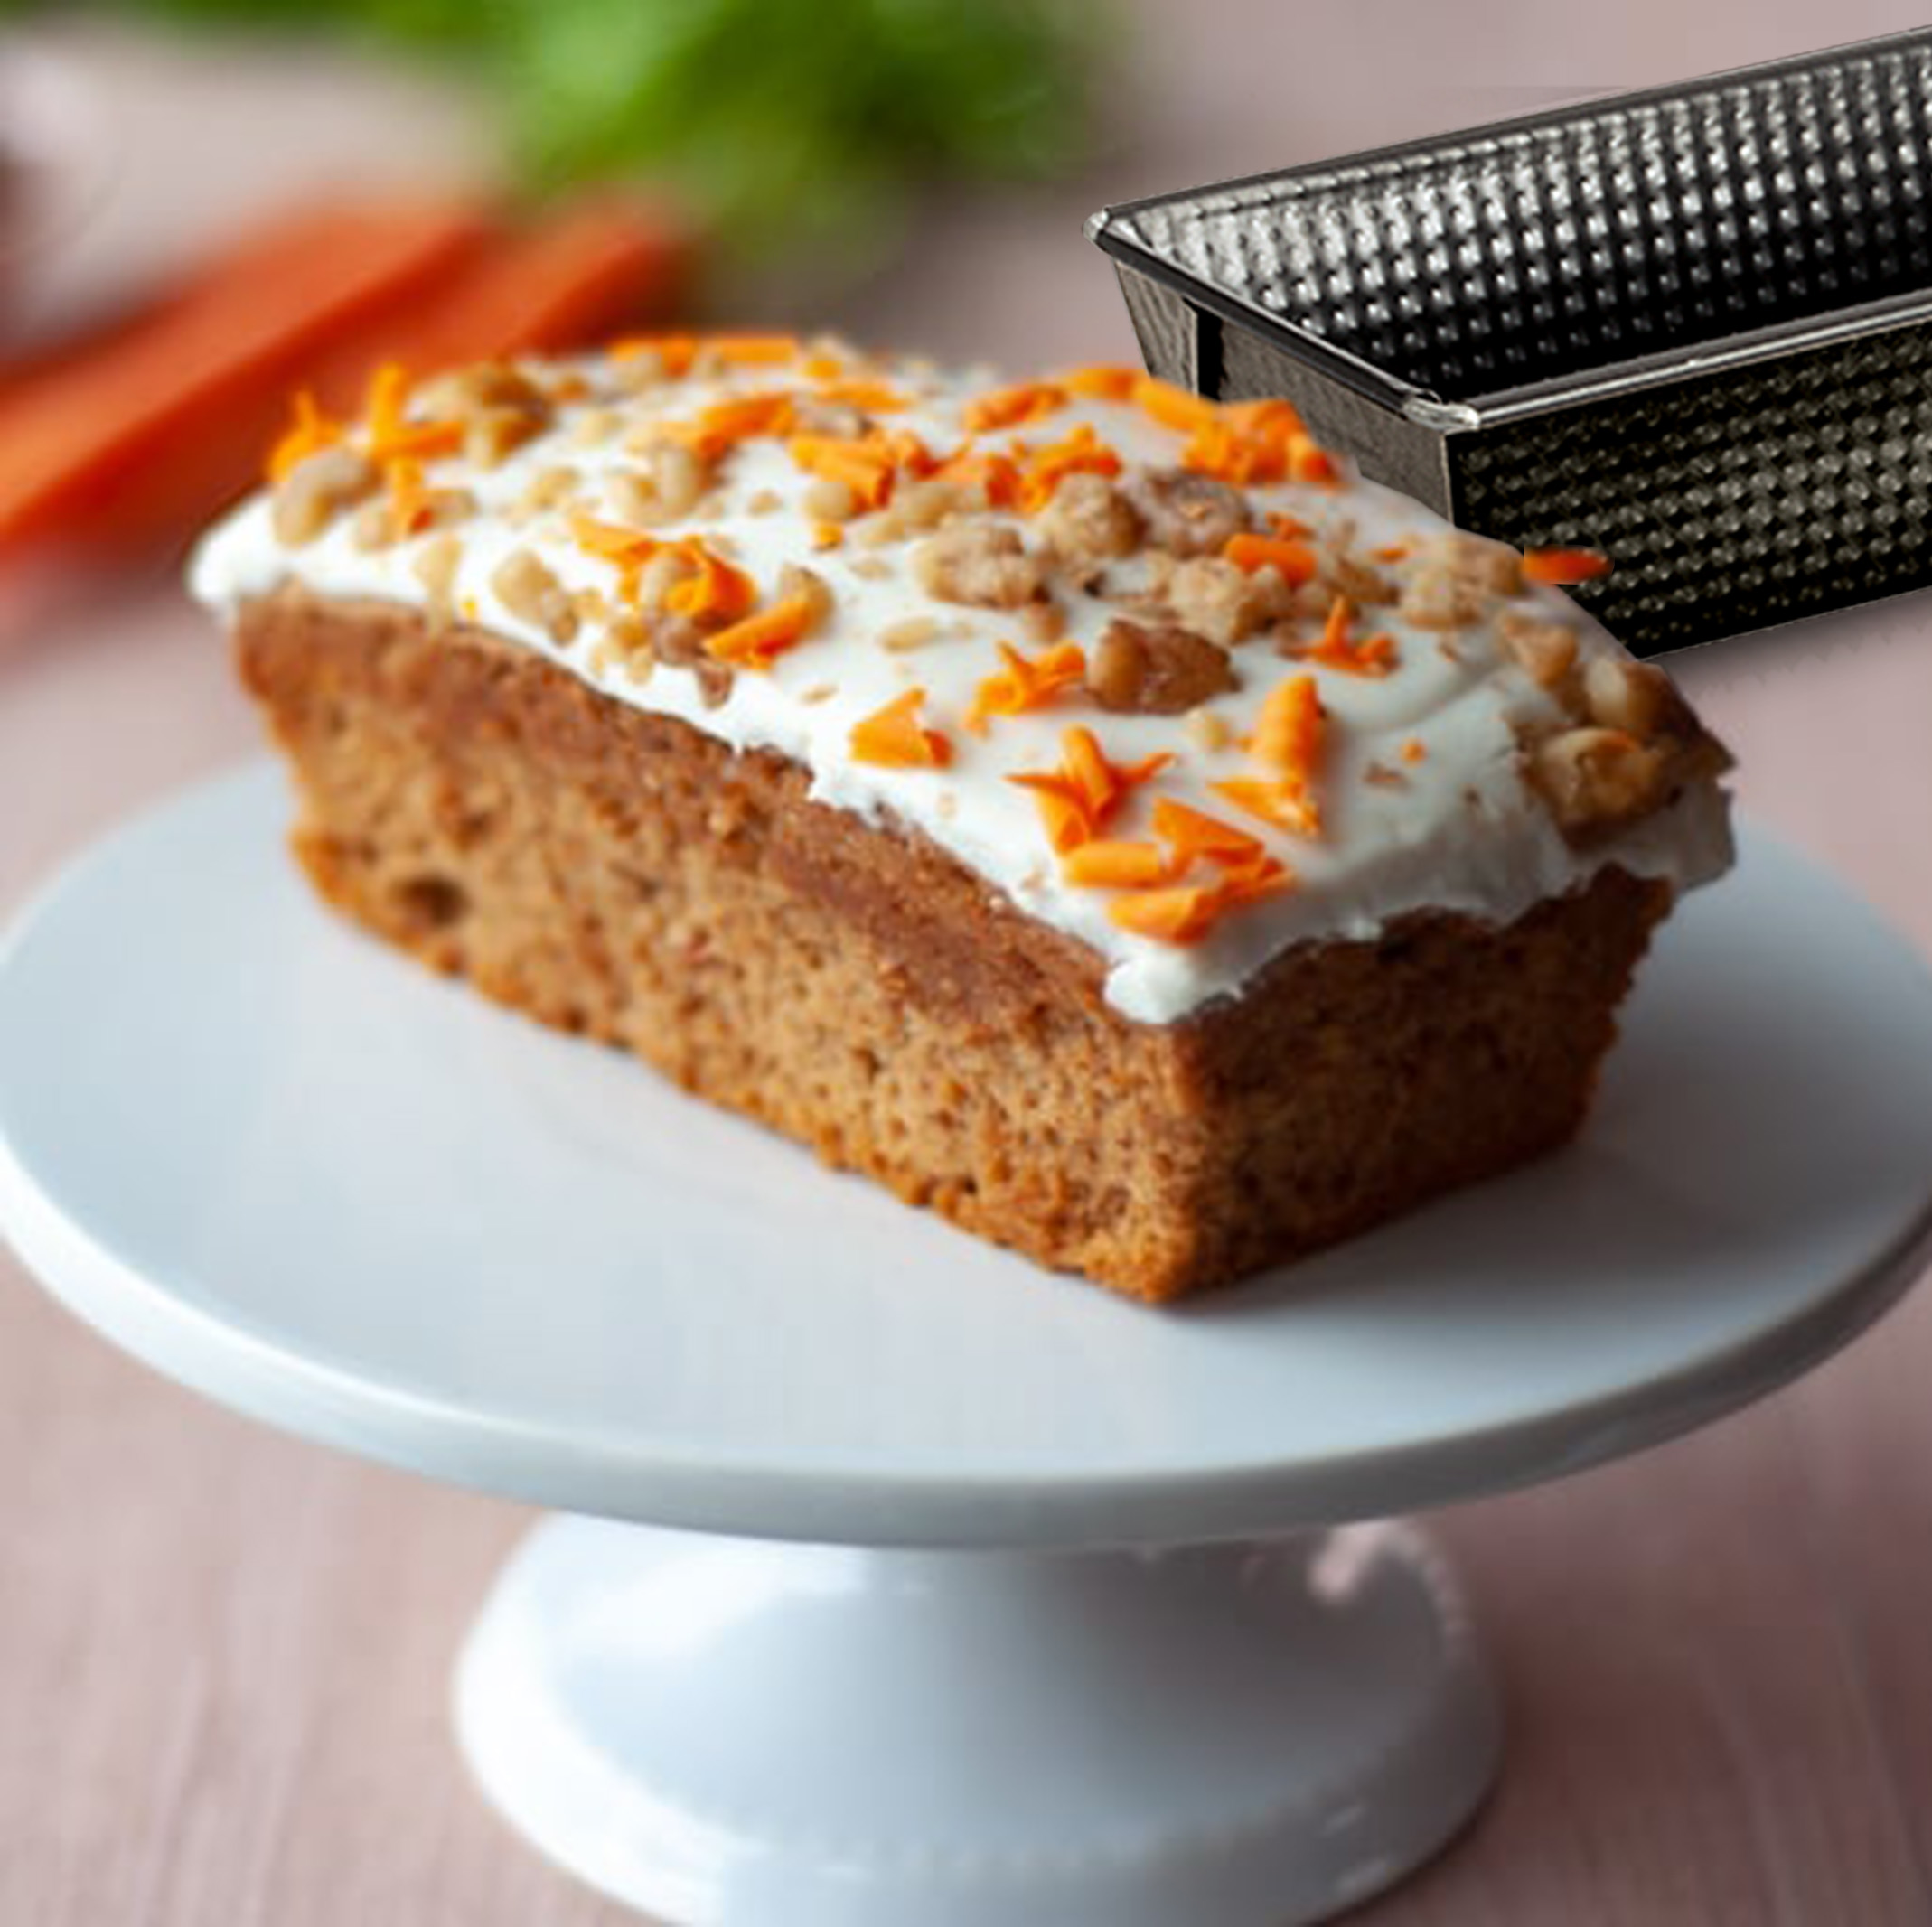 Receta de carrot cake con pocos ingredientes y superfacil de hacer